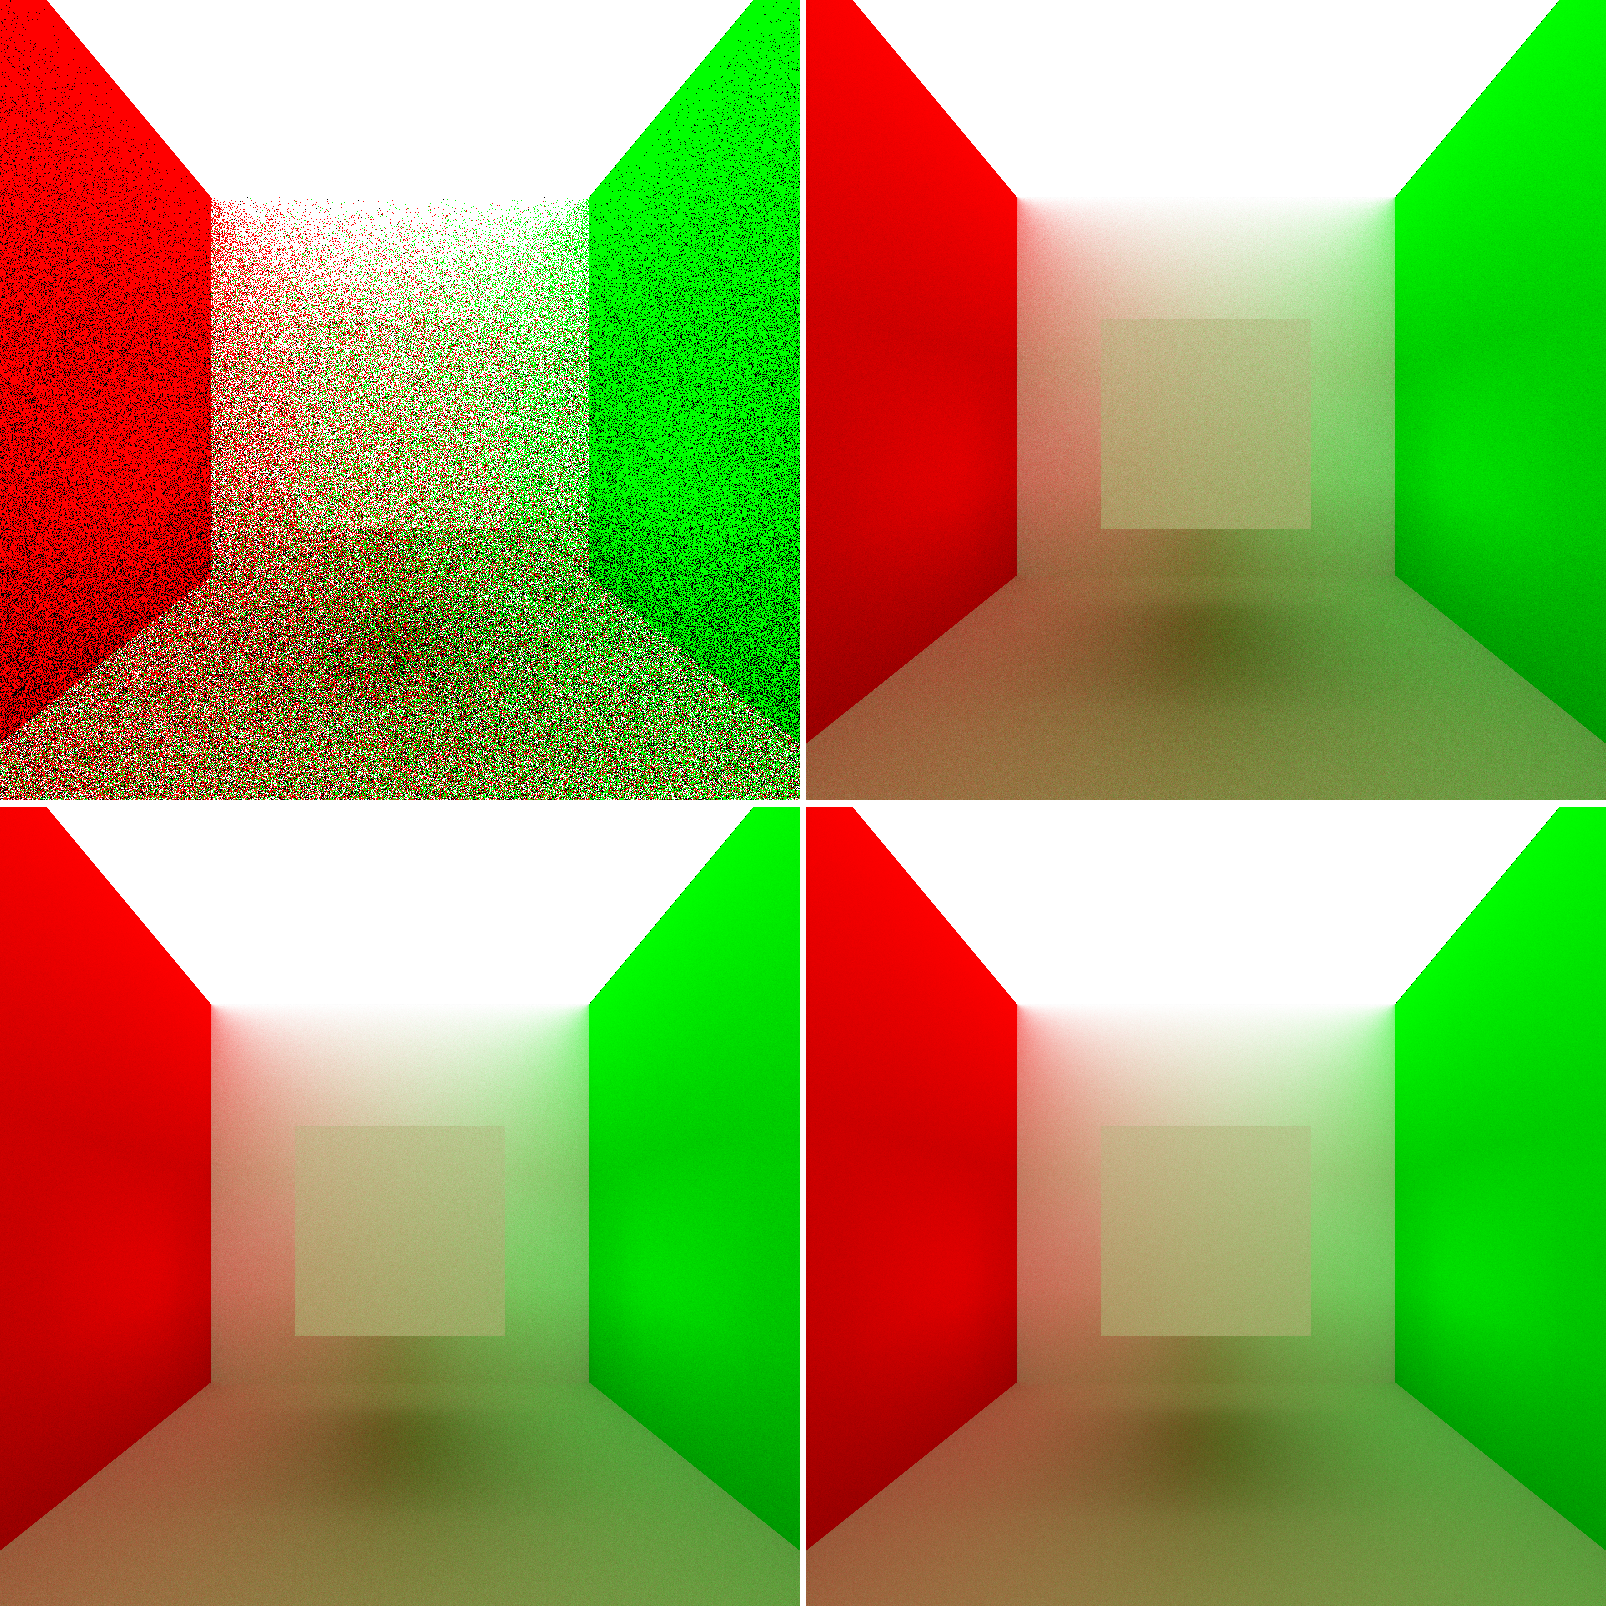 Upper Left: 1 iteration. Upper Right: 250 iterations. Lower Left: 500 iterations. Lower Right: 750 iterations.